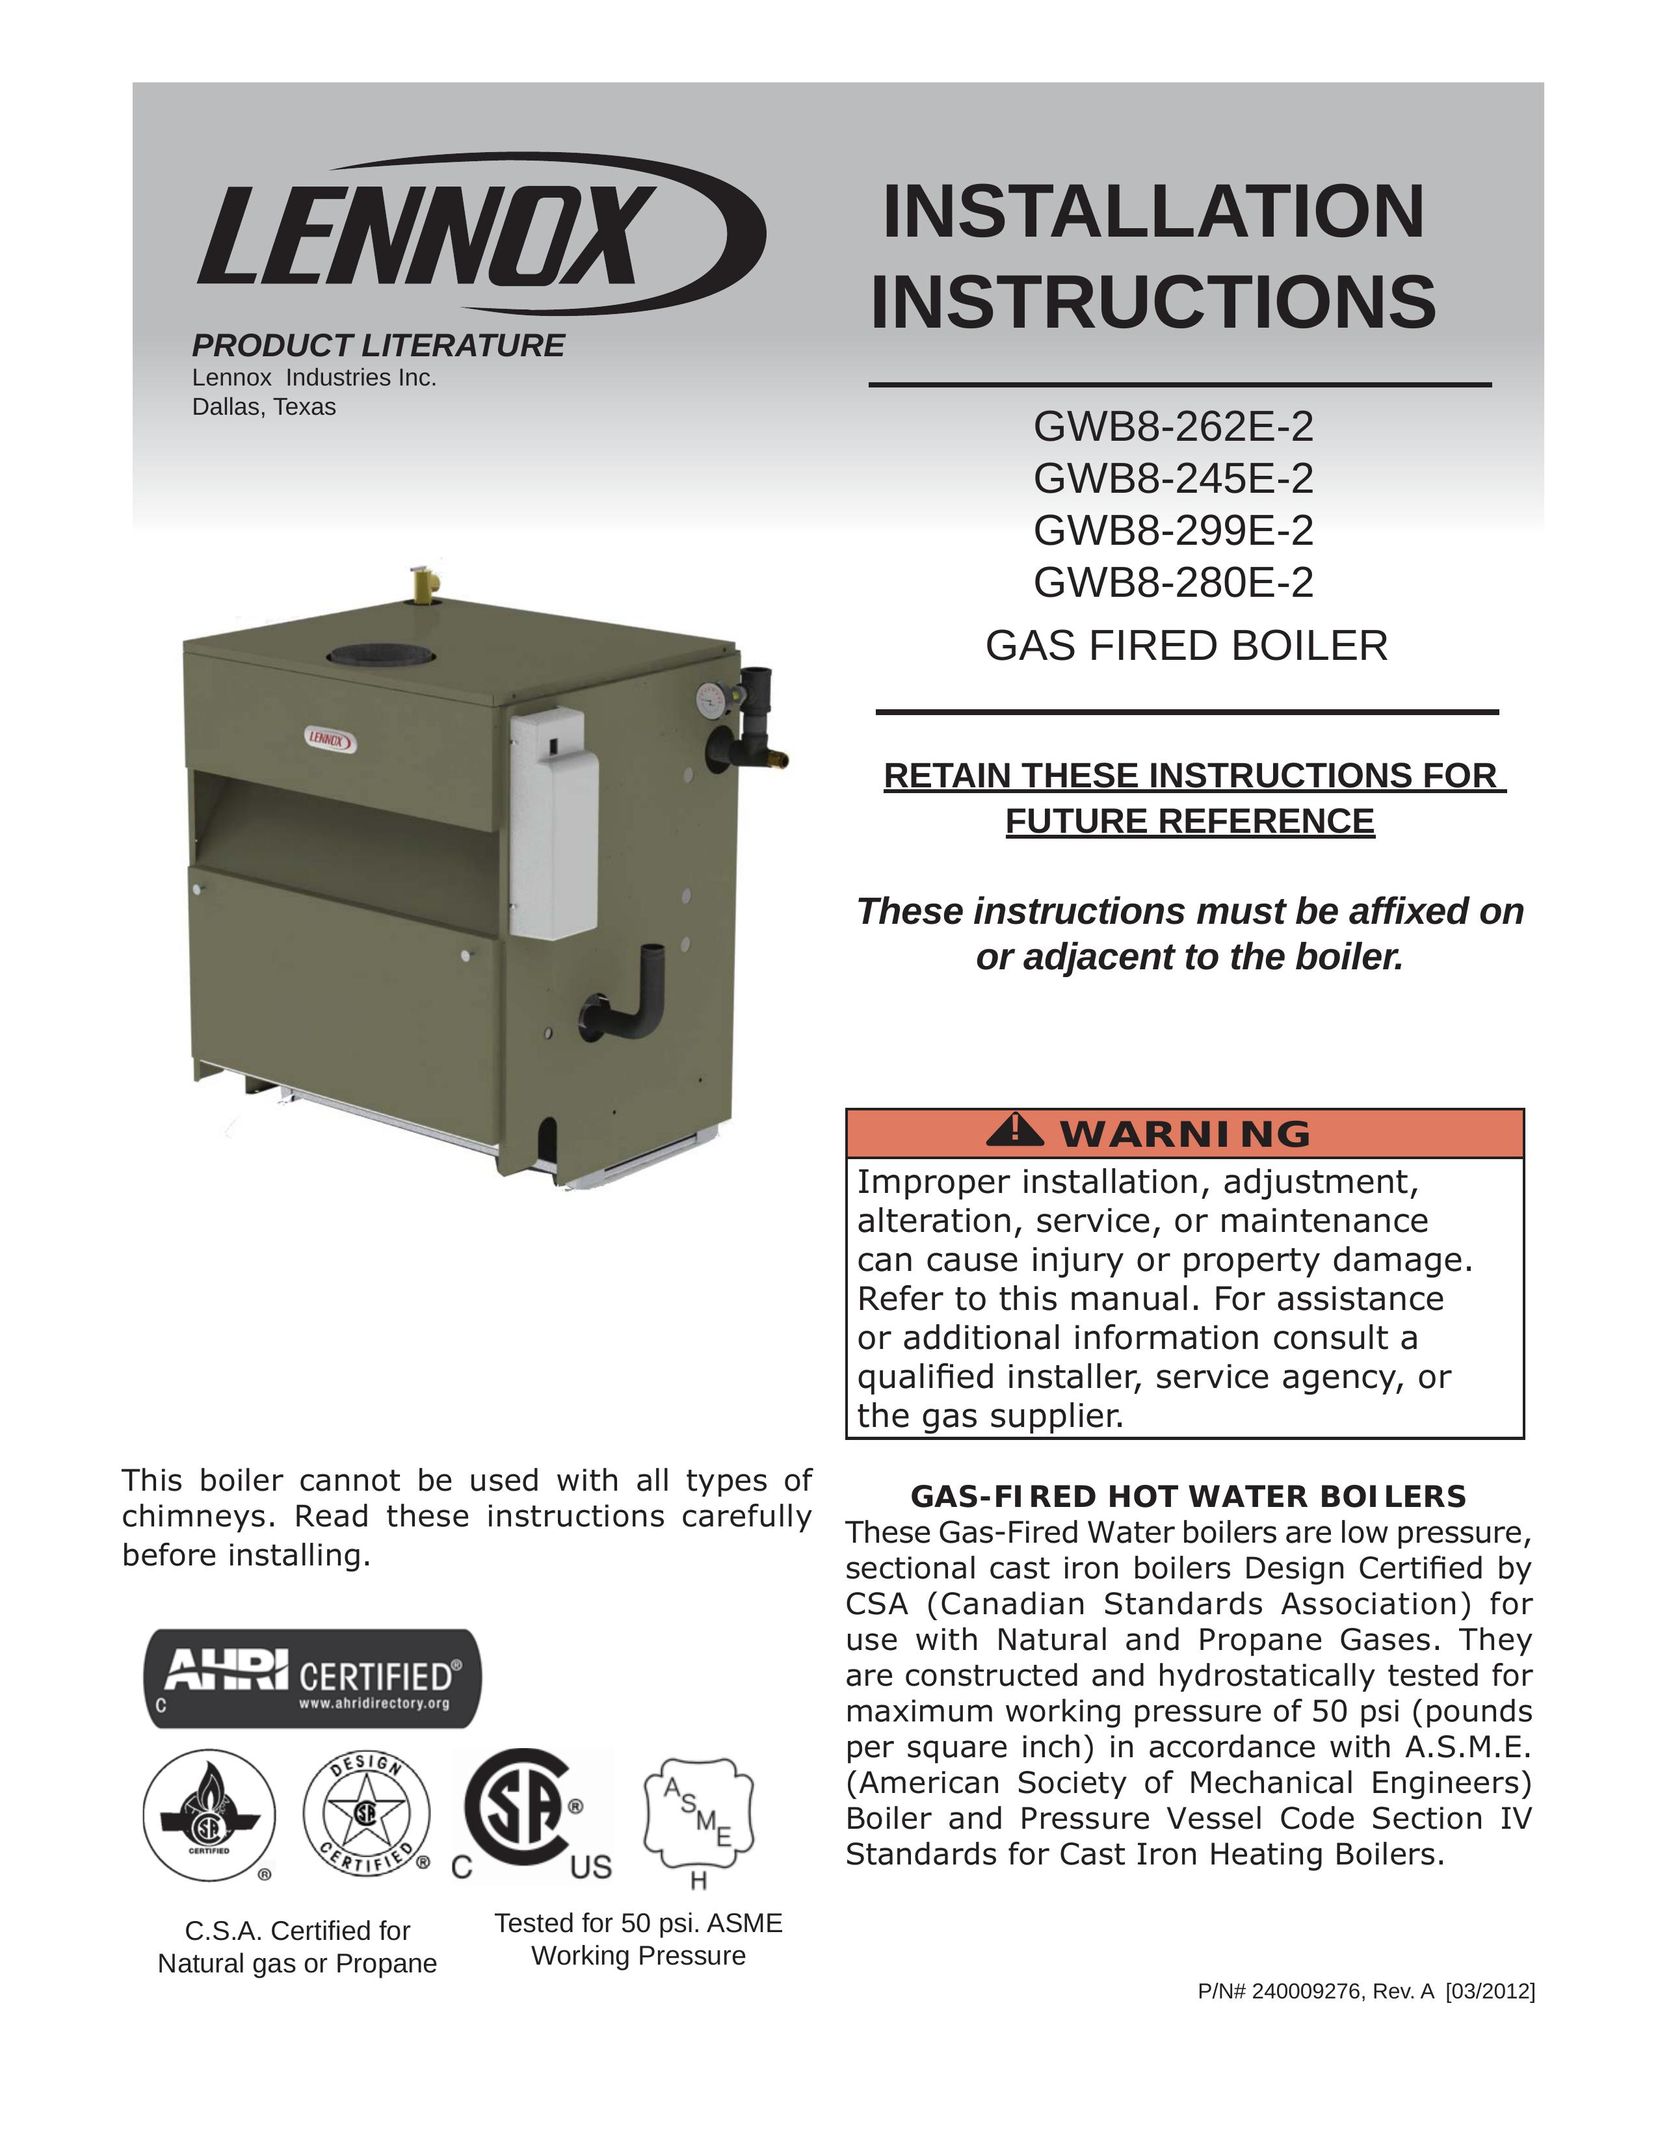 Lennox International Inc. Gas-Fired Hot Water Boiler Boiler User Manual